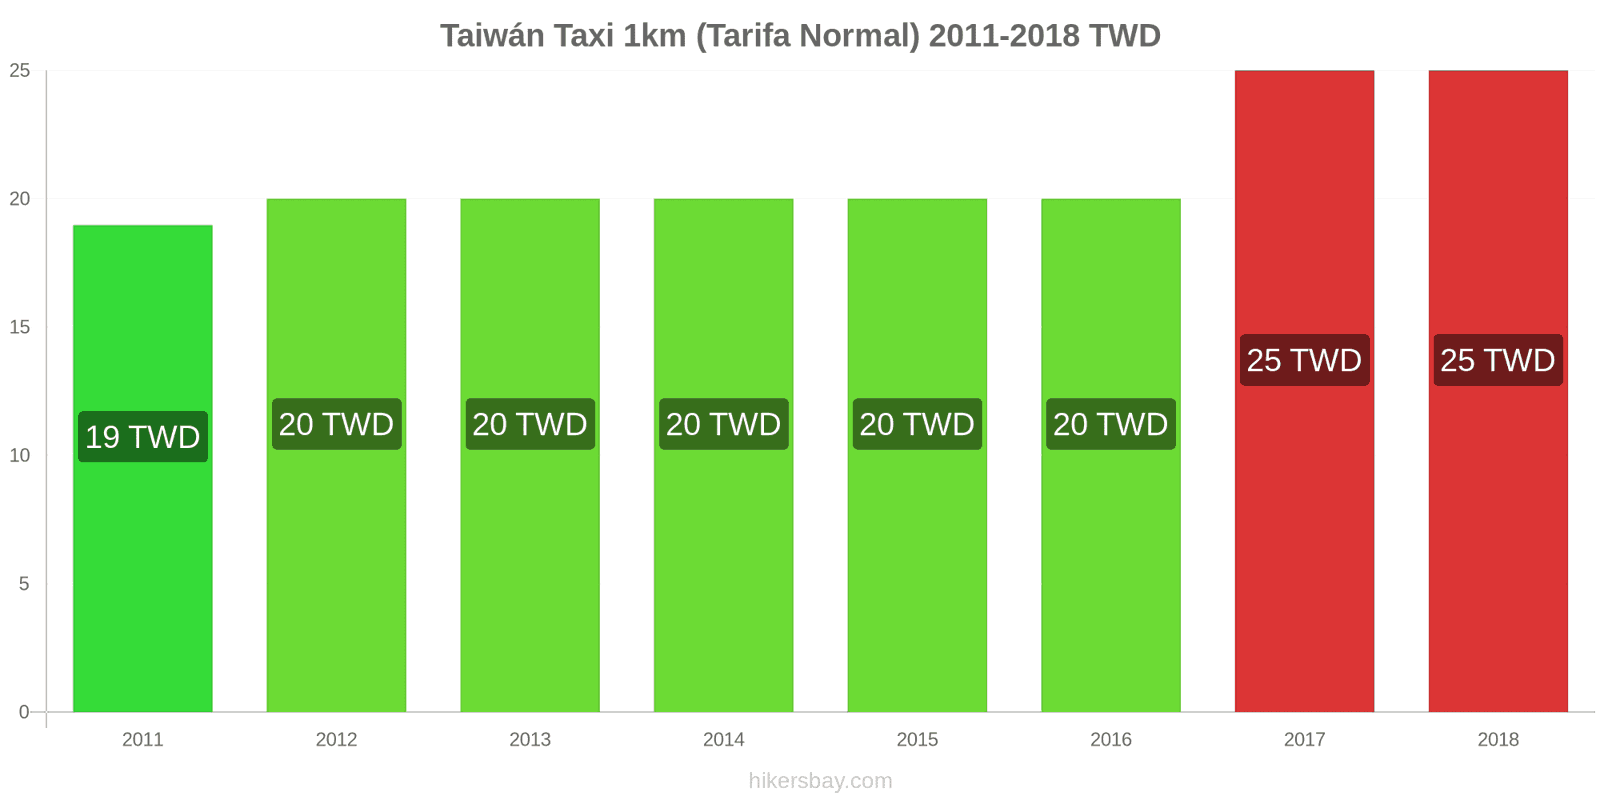 Taiwán cambios de precios Taxi 1km (tarifa normal) hikersbay.com